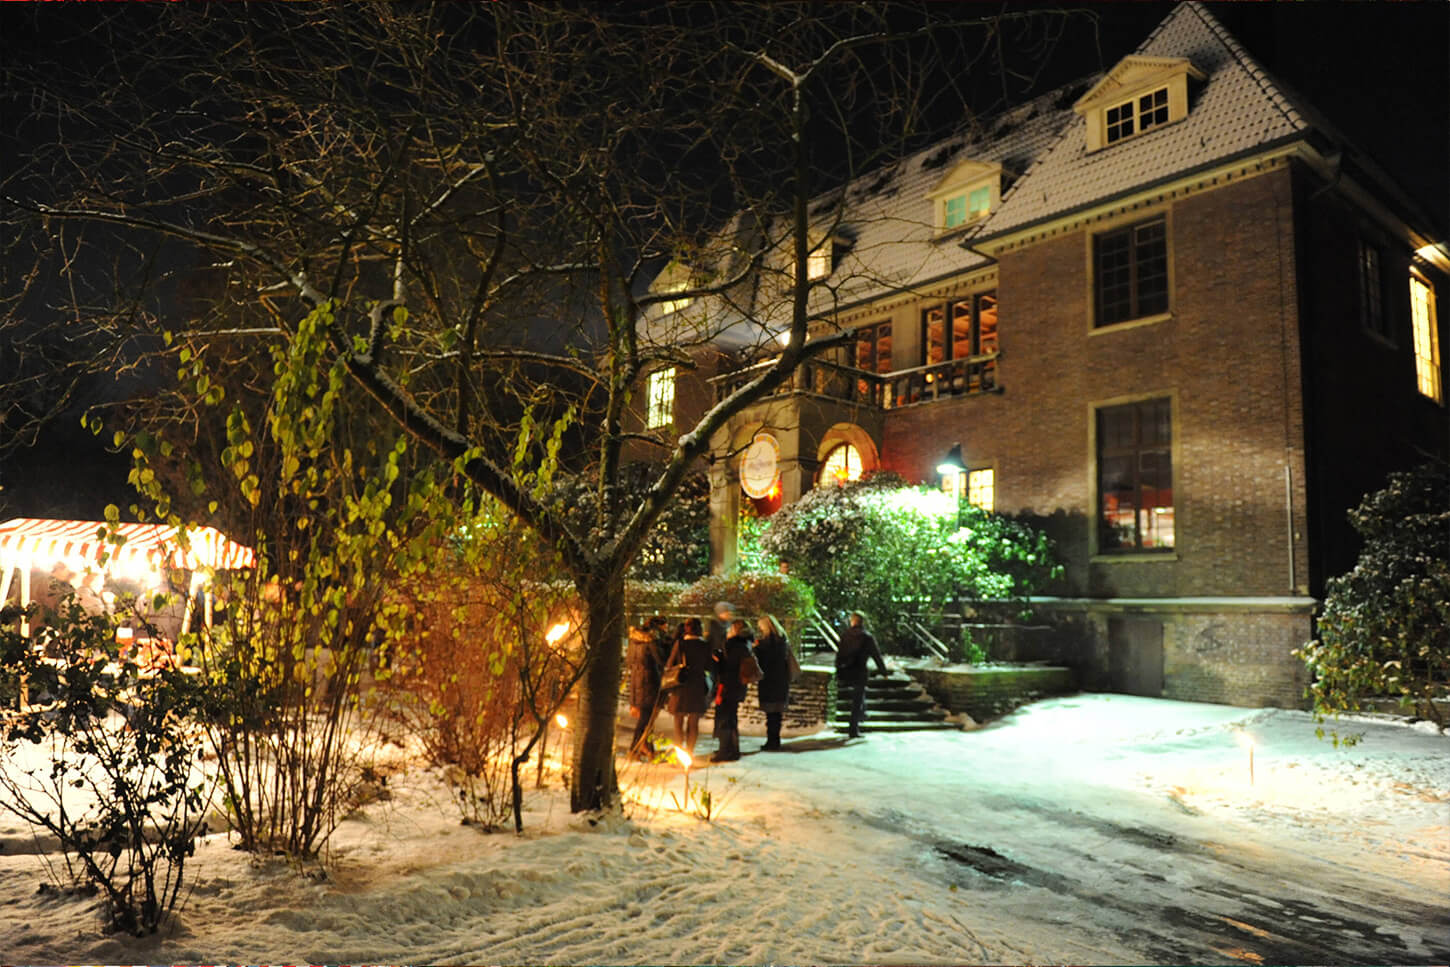 Villa Mignon Weihnachtsfeiern Location Hamburg winterliche Stimmung